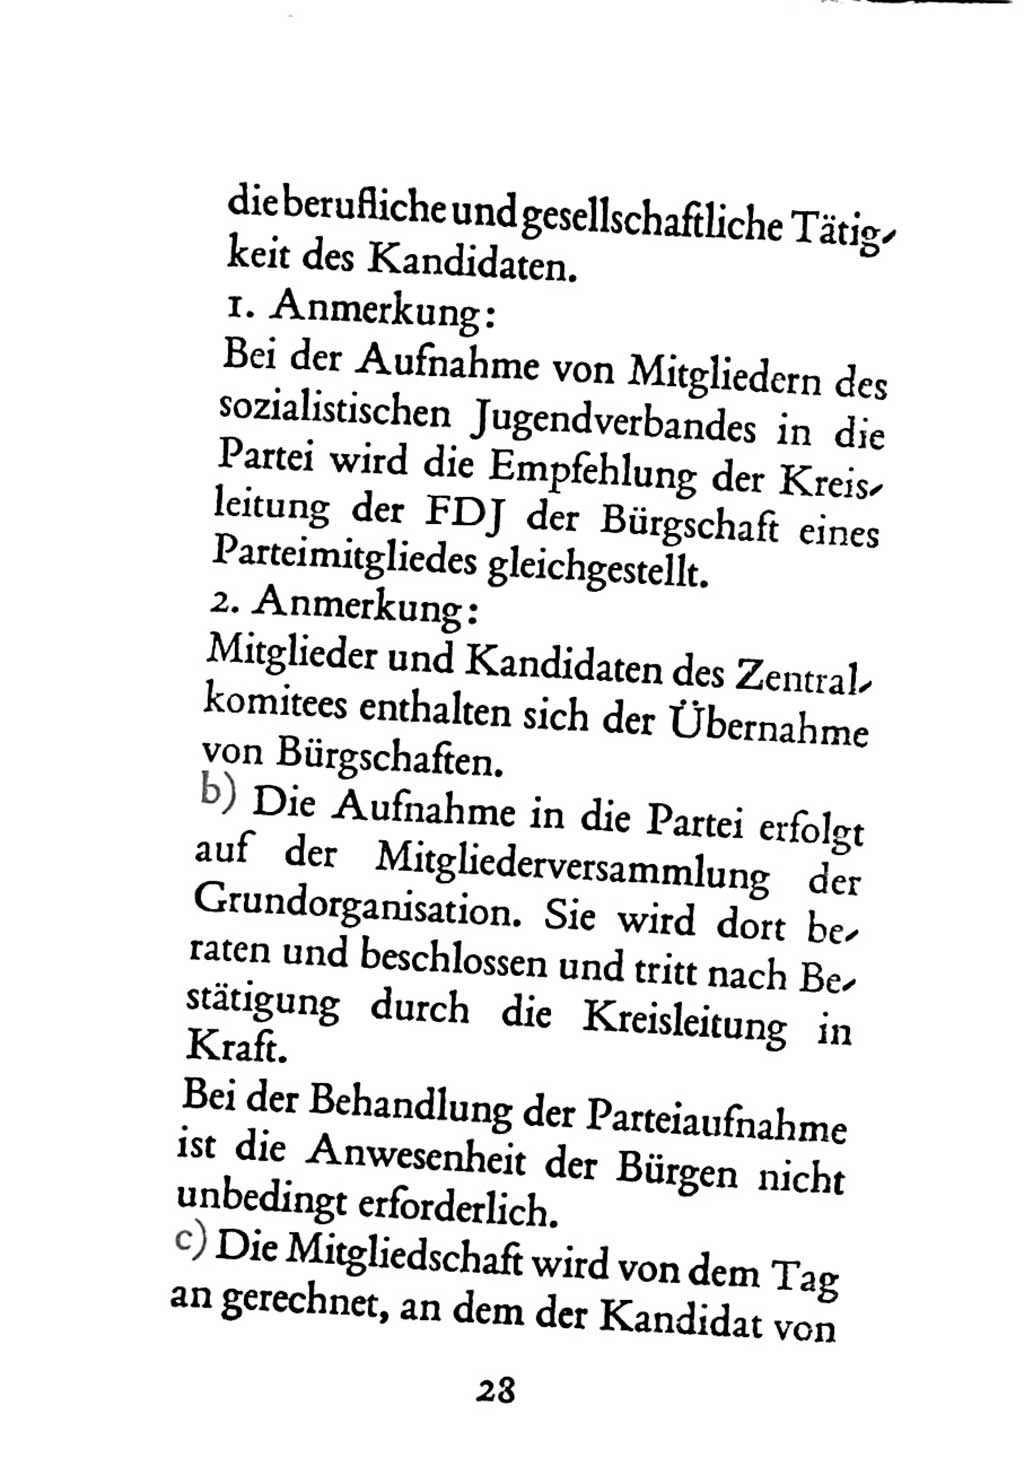 Statut der Sozialistischen Einheitspartei Deutschlands (SED) 1963, Seite 28 (St. SED DDR 1963, S. 28)